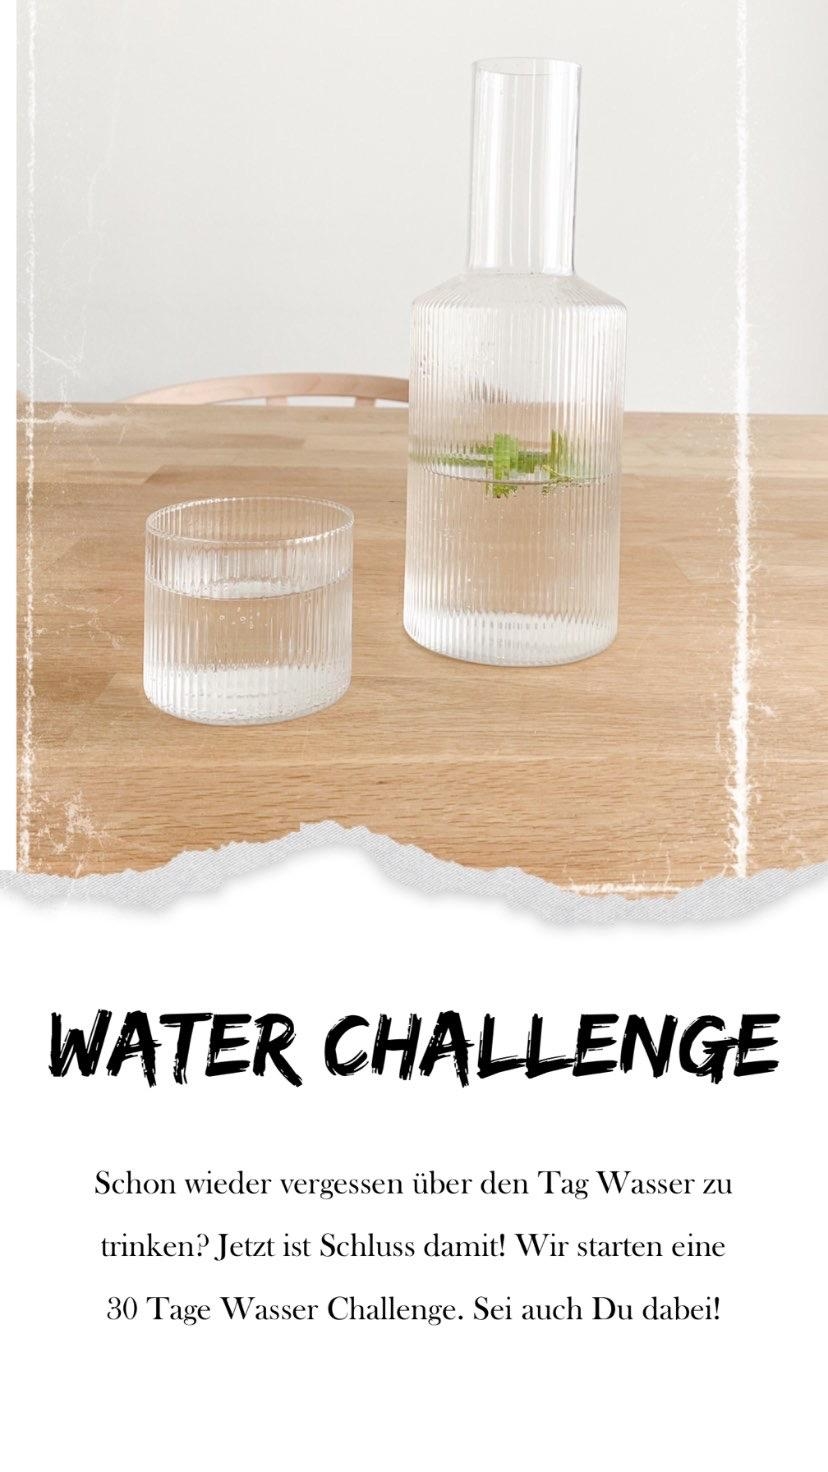 Ich starte meine #waterchallenge. Mehr Infos auf Insta unter @Kidsontourage_home 
#sommer #heiß #Wasser